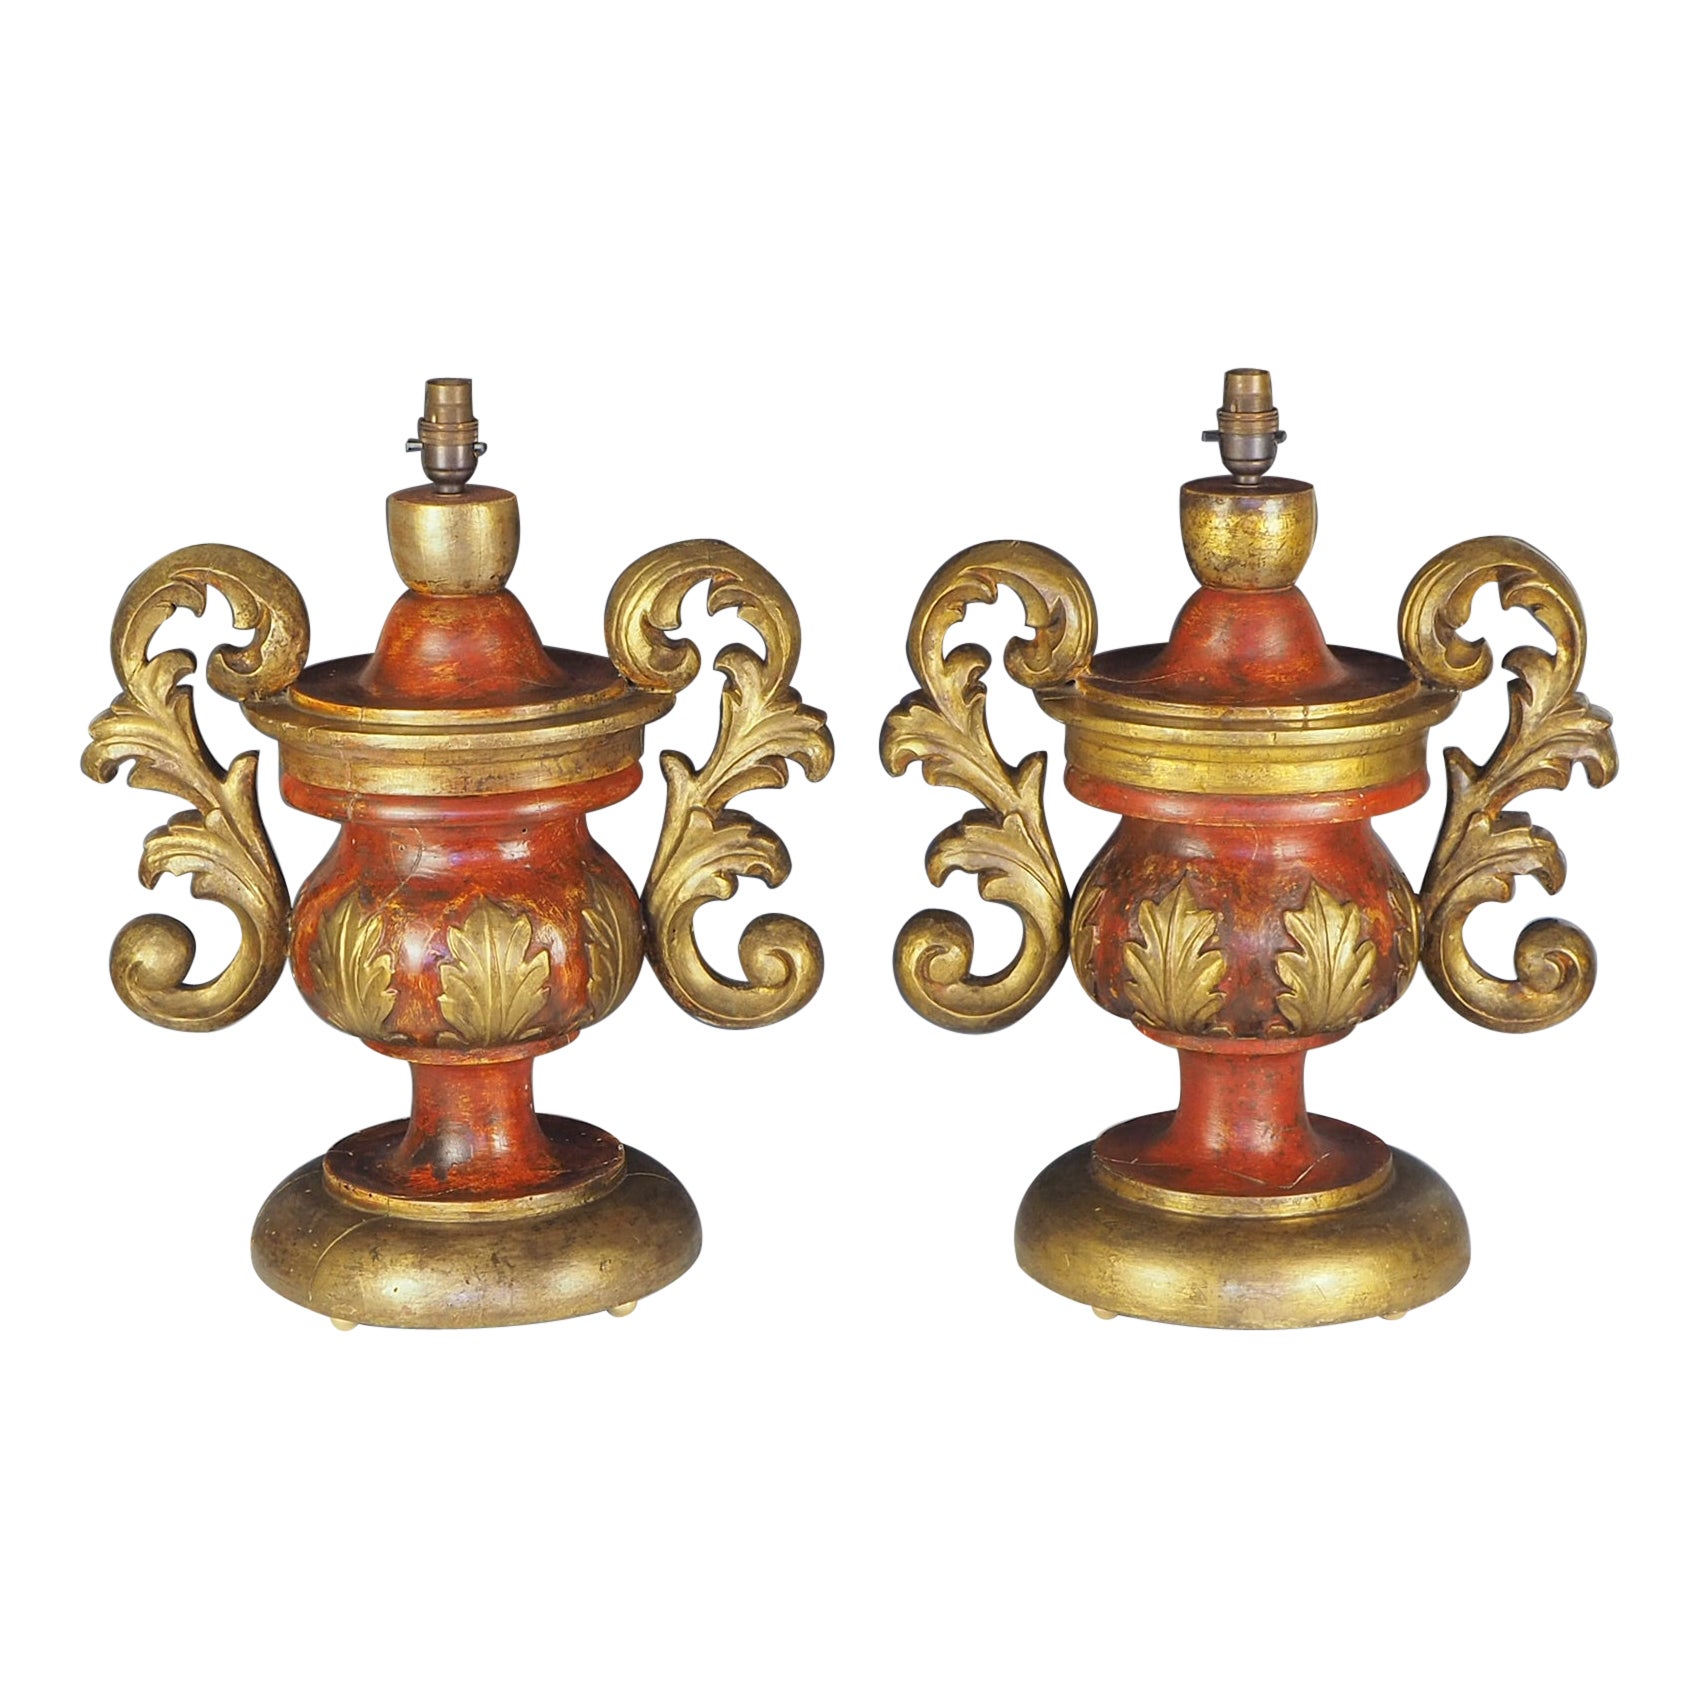 Paire de lampes de bureau italiennes du 19ème siècle sculptées et peintes à la main